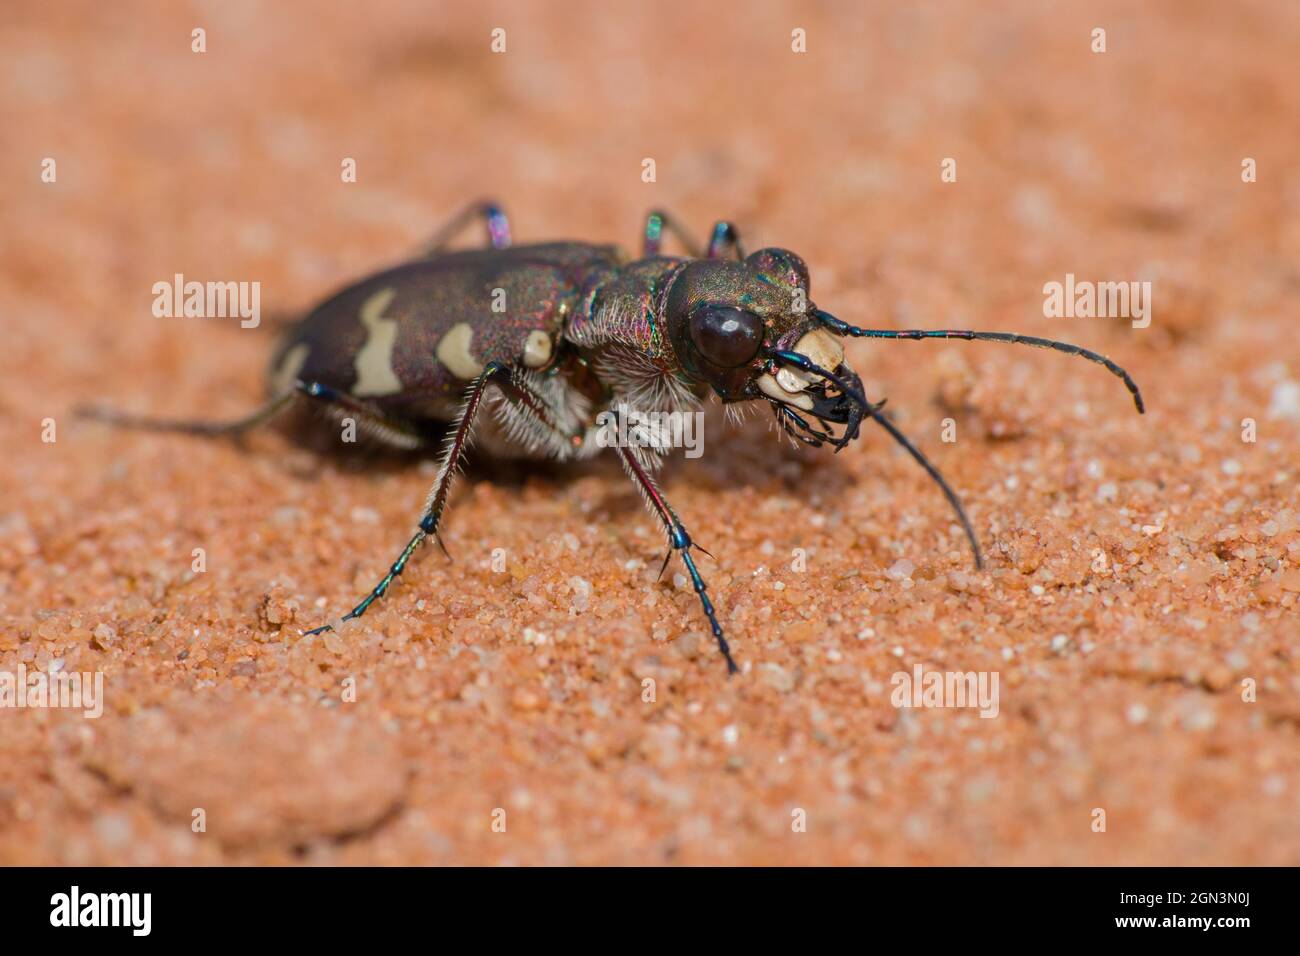 Primer plano de un escarabajo de tigre de dunas del norte [Cicindela hybrida] Foto de stock